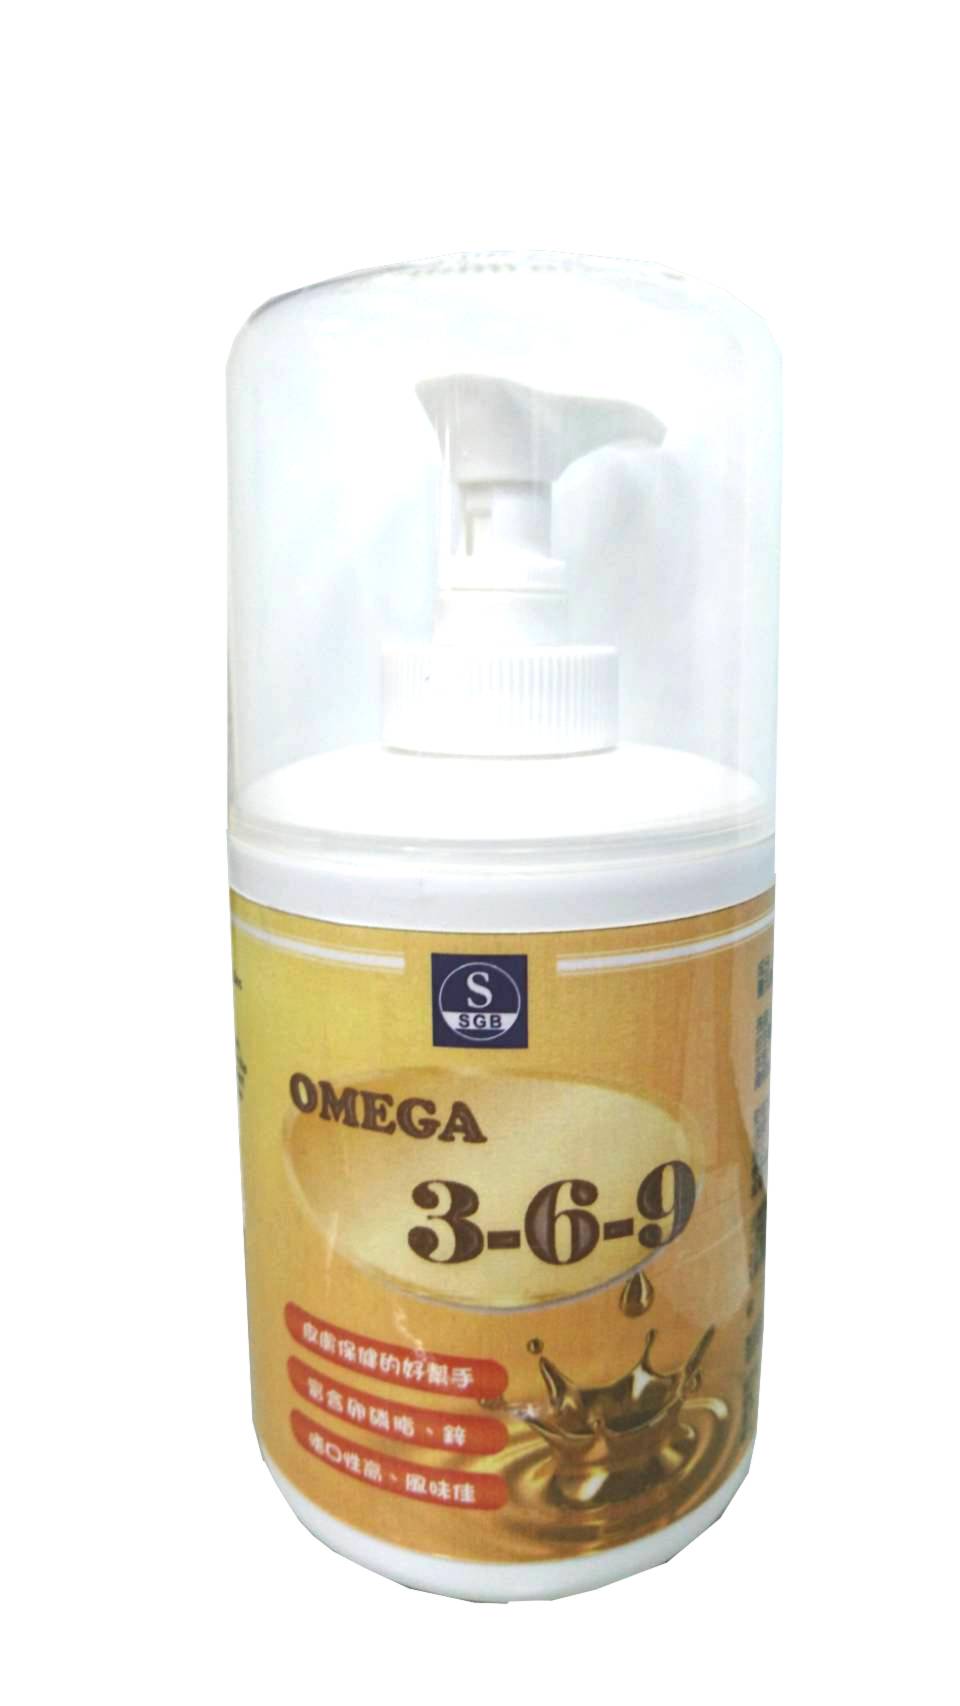 Omega 3-6-9
Omega 3-6-9